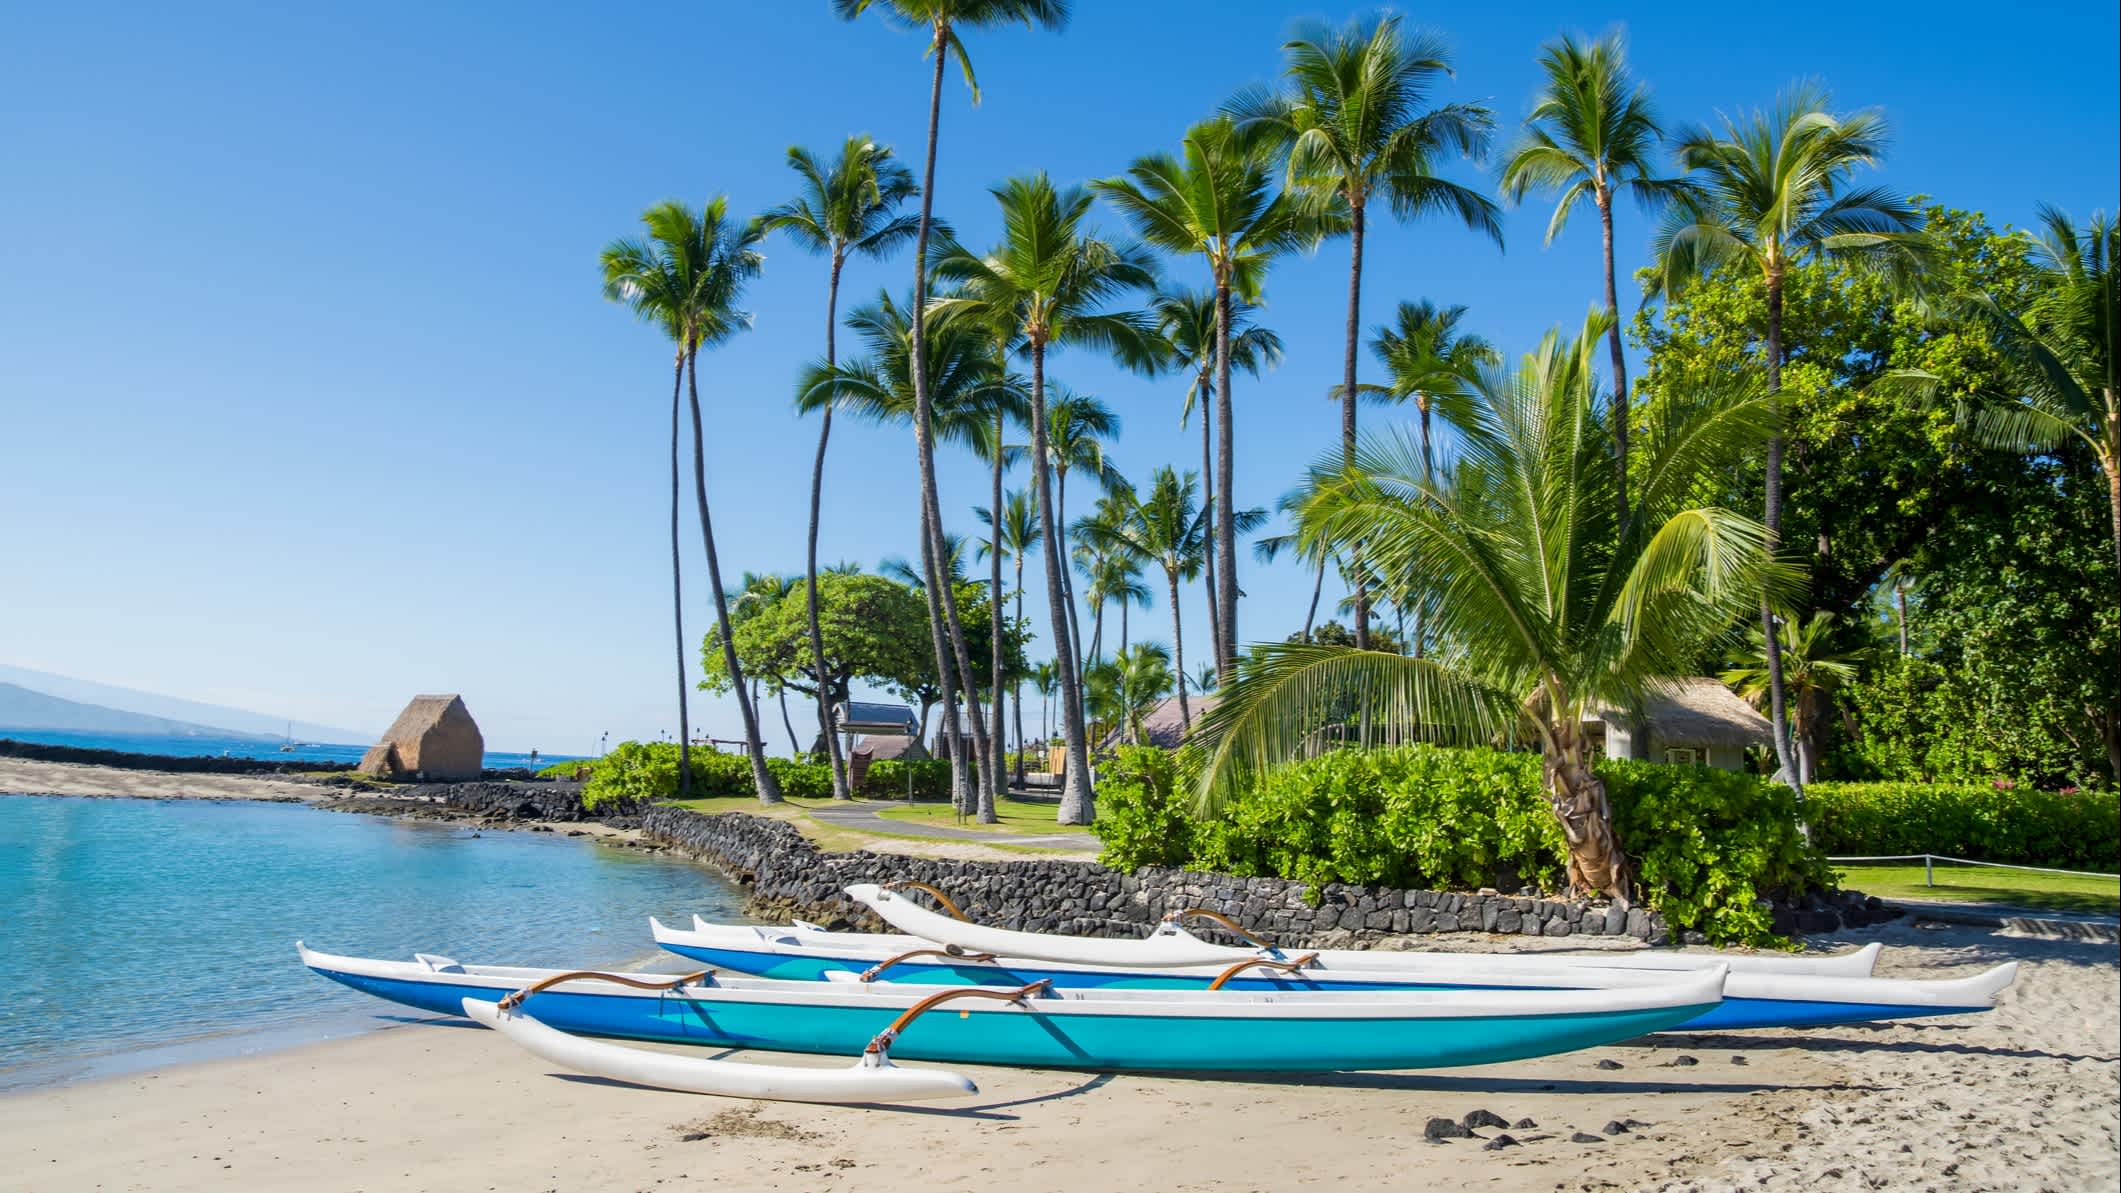 Hawaiianischer Kanus am Kamakahonu Beach in Kailua-Kona, Big Island, Hawaii.

